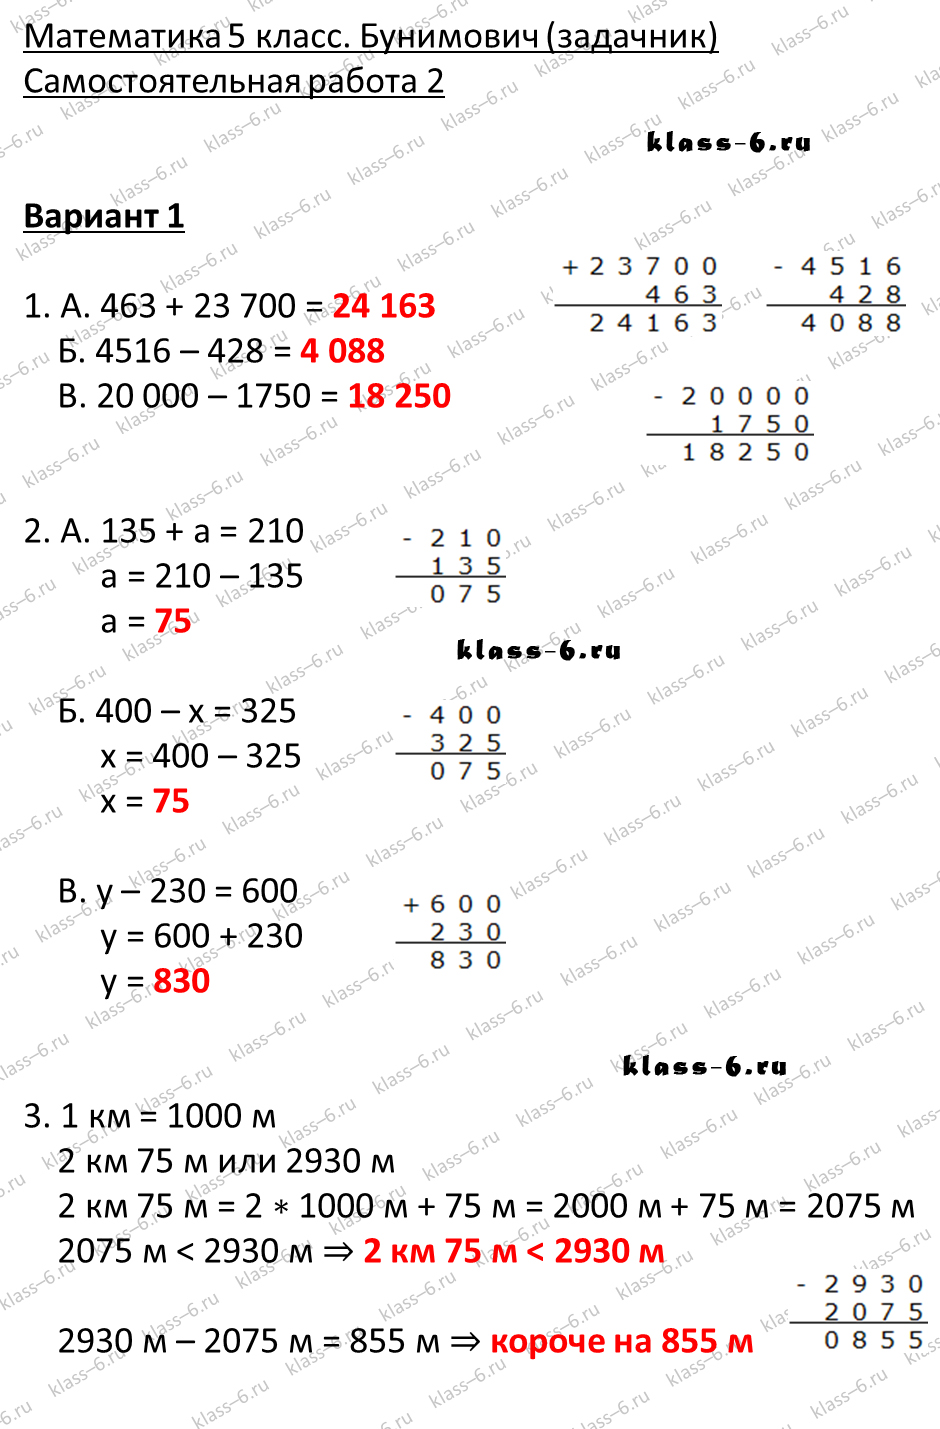 решебник и гдз по математике задачник Бунимович 5 класс самостоятельная работа 2-v1